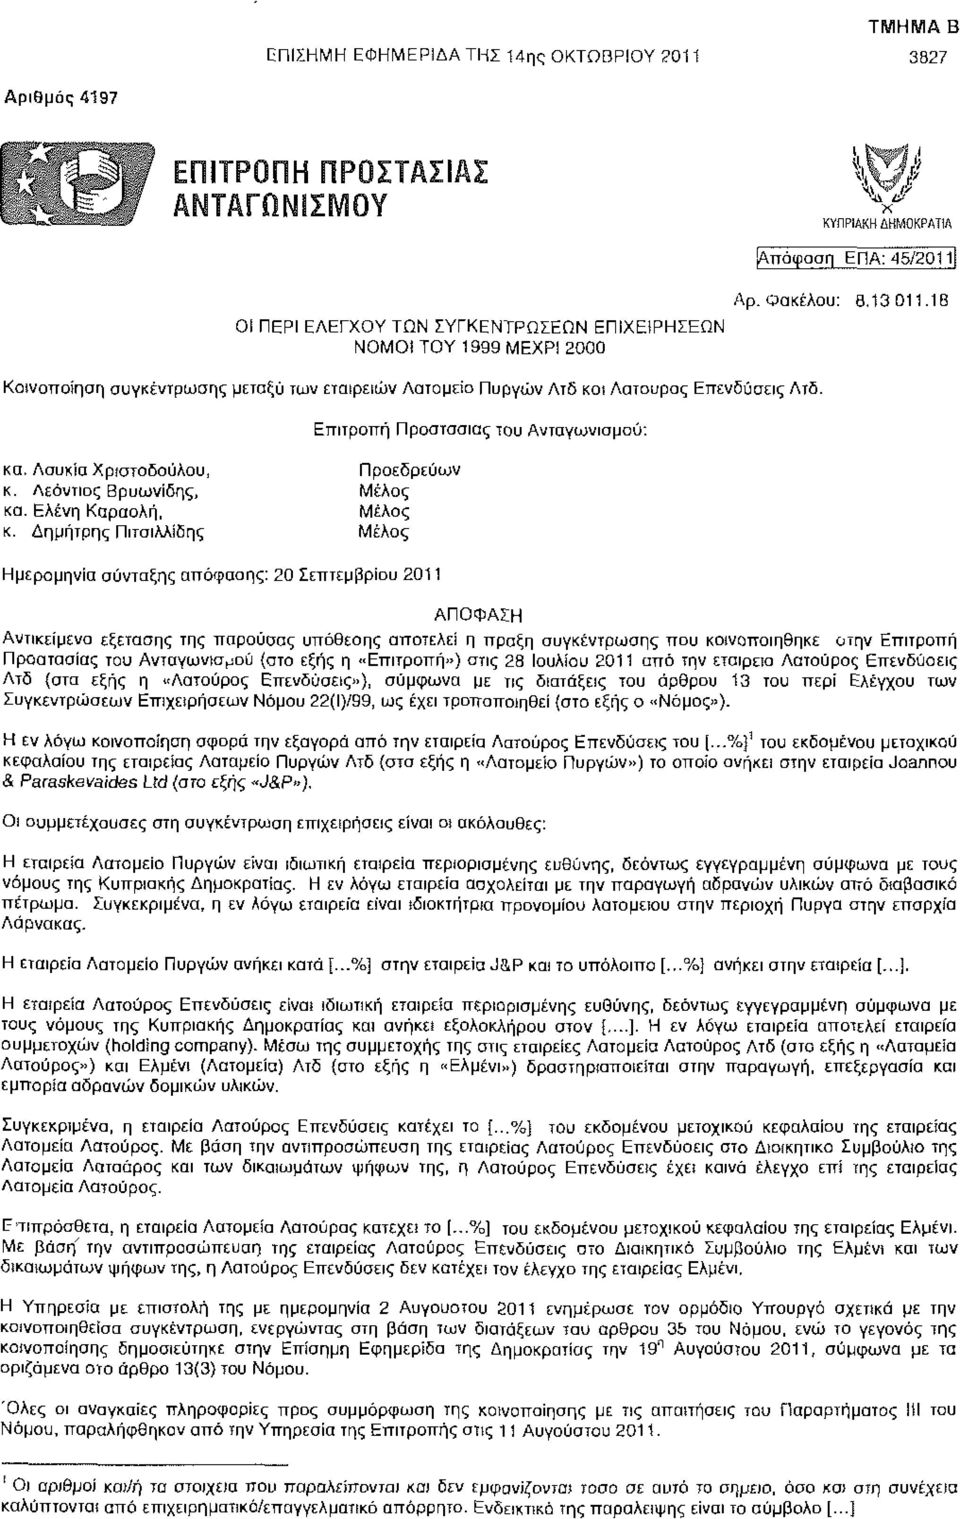 Δημήτρης Πιτσιλλίδης Μέλος Ημερομηνία σύνταξης απόφασης: 20 Σεπτεμβρίου 2011 Επιτροπή Προστασίας του Ανταγωνισμού: ΑΠΟΦΑΣΗ Αντικείμενο εξέτασης της παρούσας υπόθεσης αποτελεί η πράξη συγκέντρωσης που